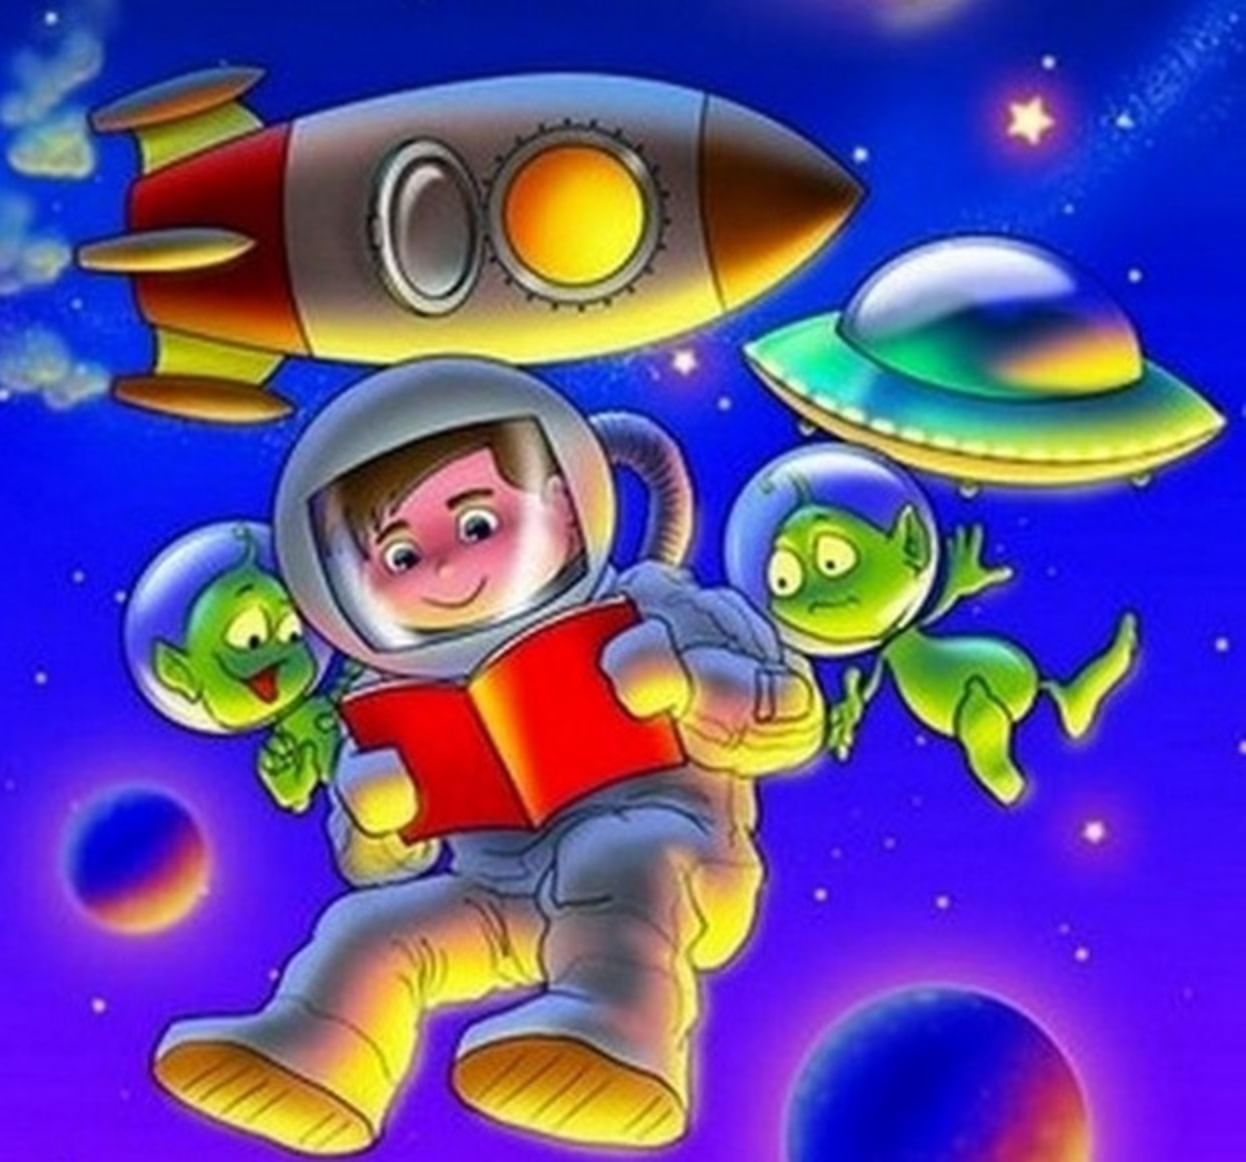 первые в космосе картинки для детей